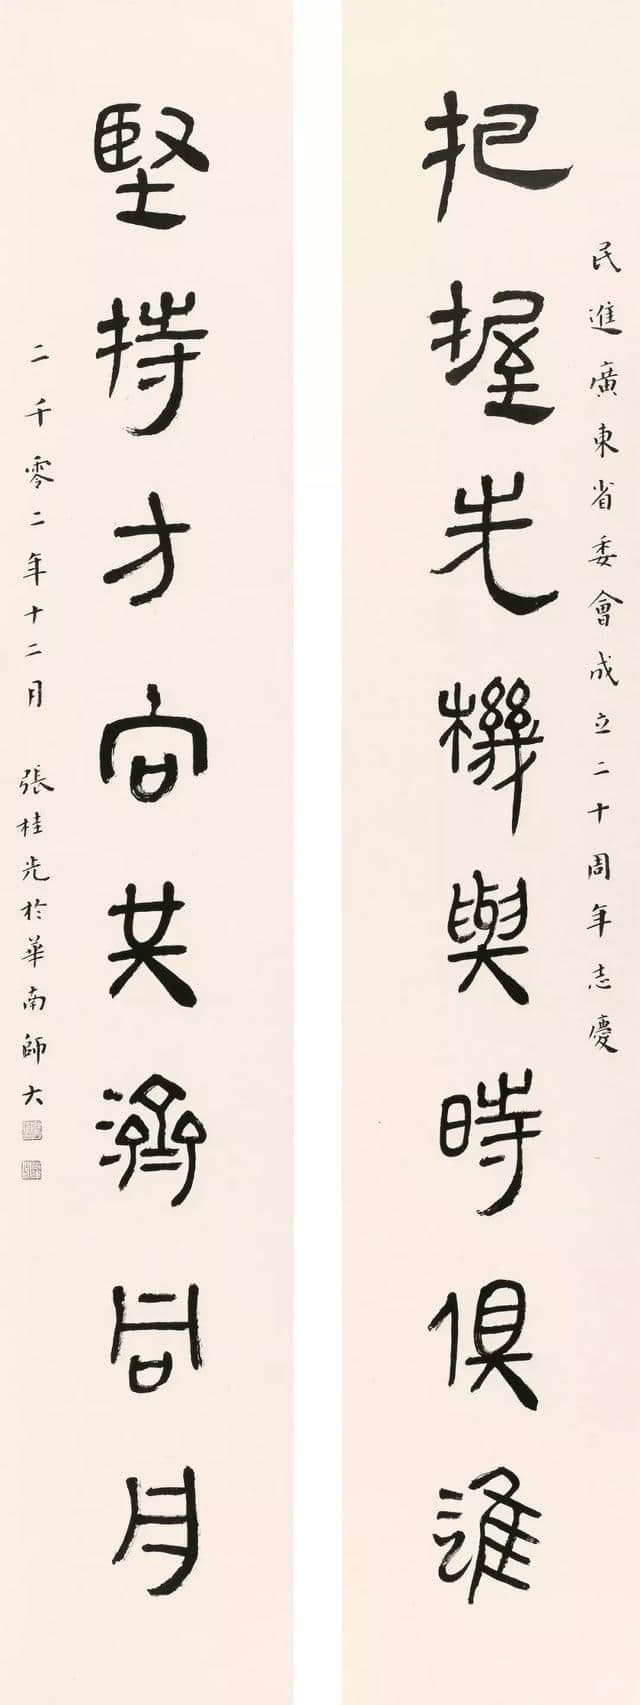 中国古文字研究会理事、广东省文史馆馆员、张桂光书法作品欣赏